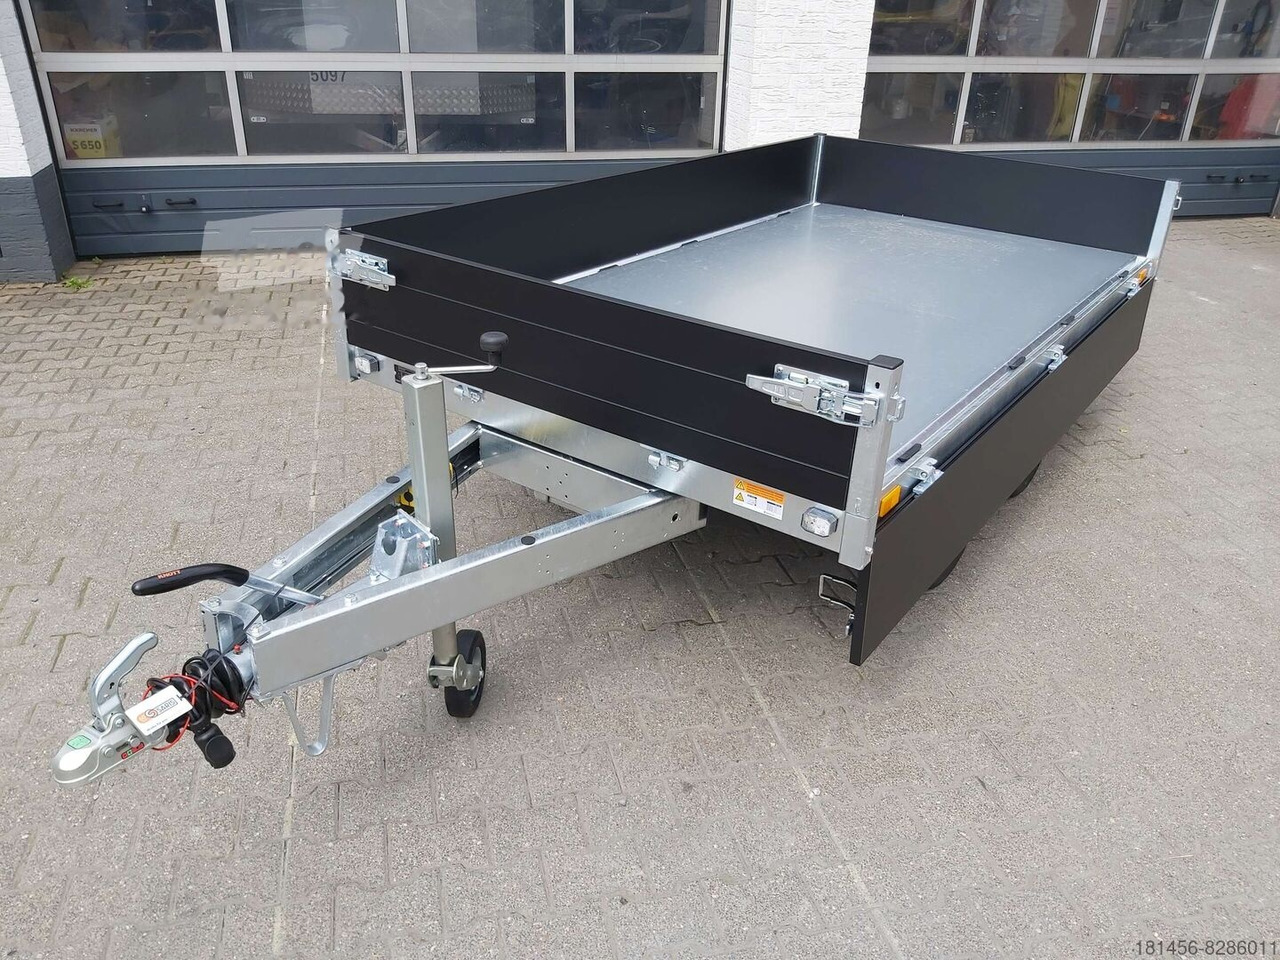 Saris Heckkipper K1 276 150 2700kg elektro direkt verfügbar jetzt kaufen - Tipper trailer: picture 2